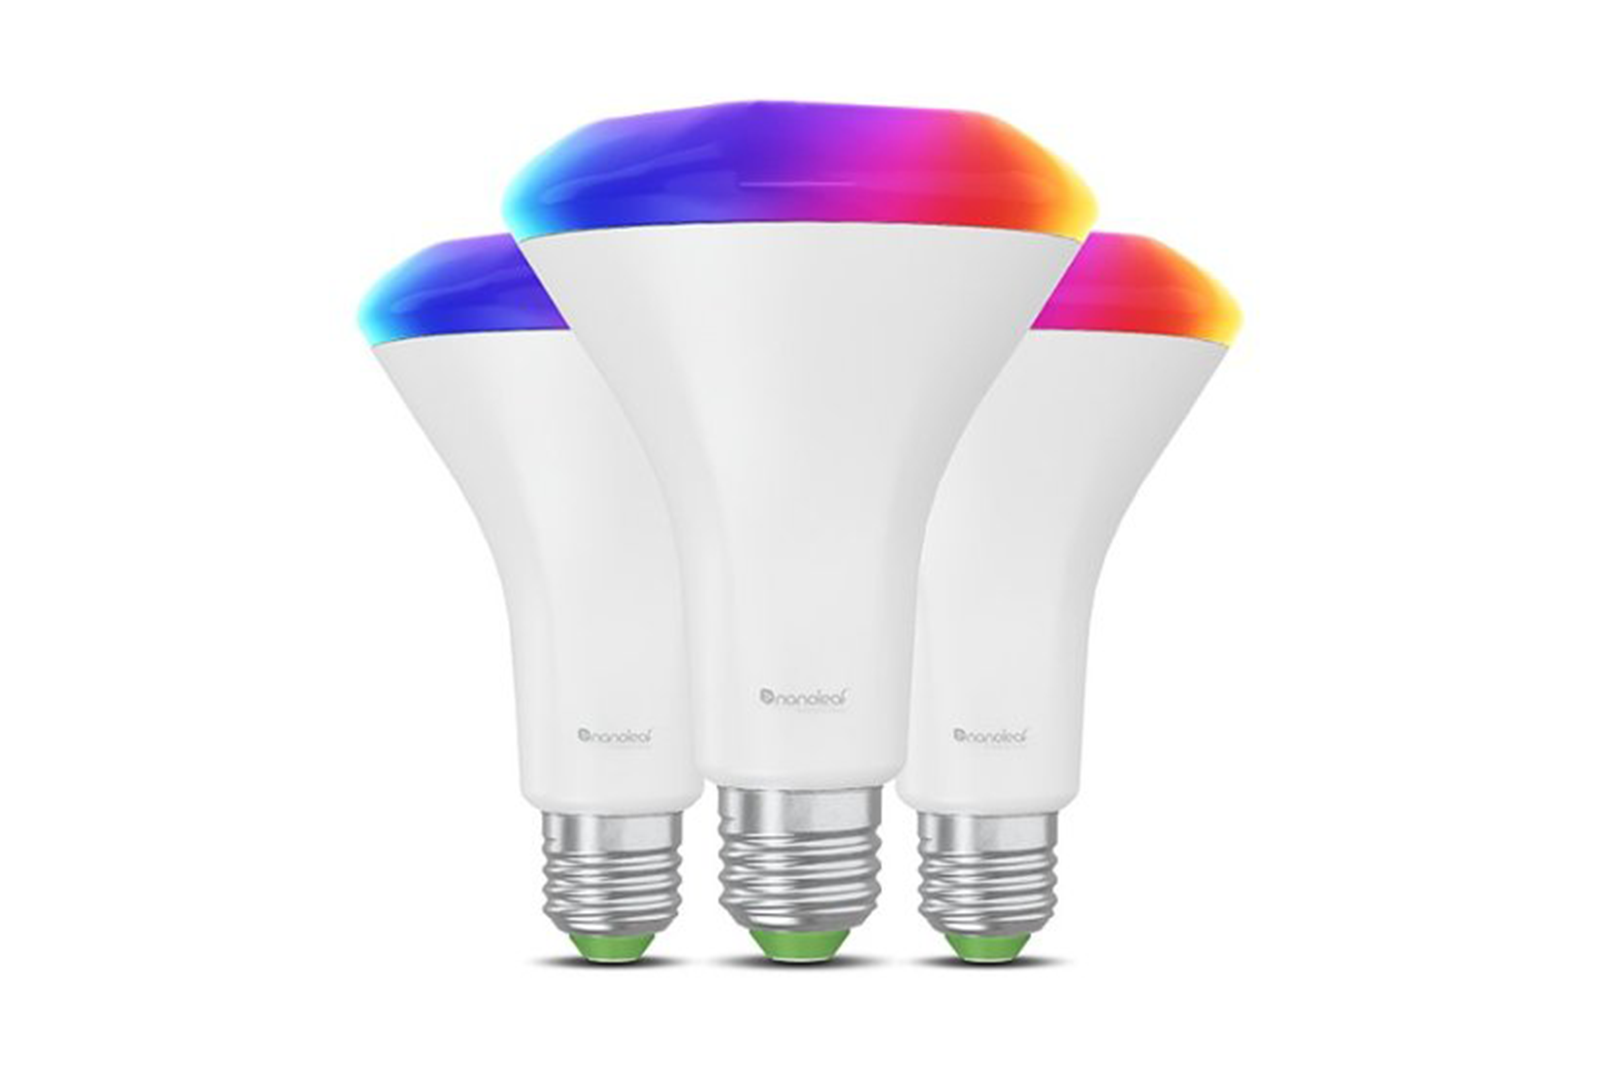 Nanoleaf Essentials Matter BR30 Smart LED Light Bulbs (3-Pack)